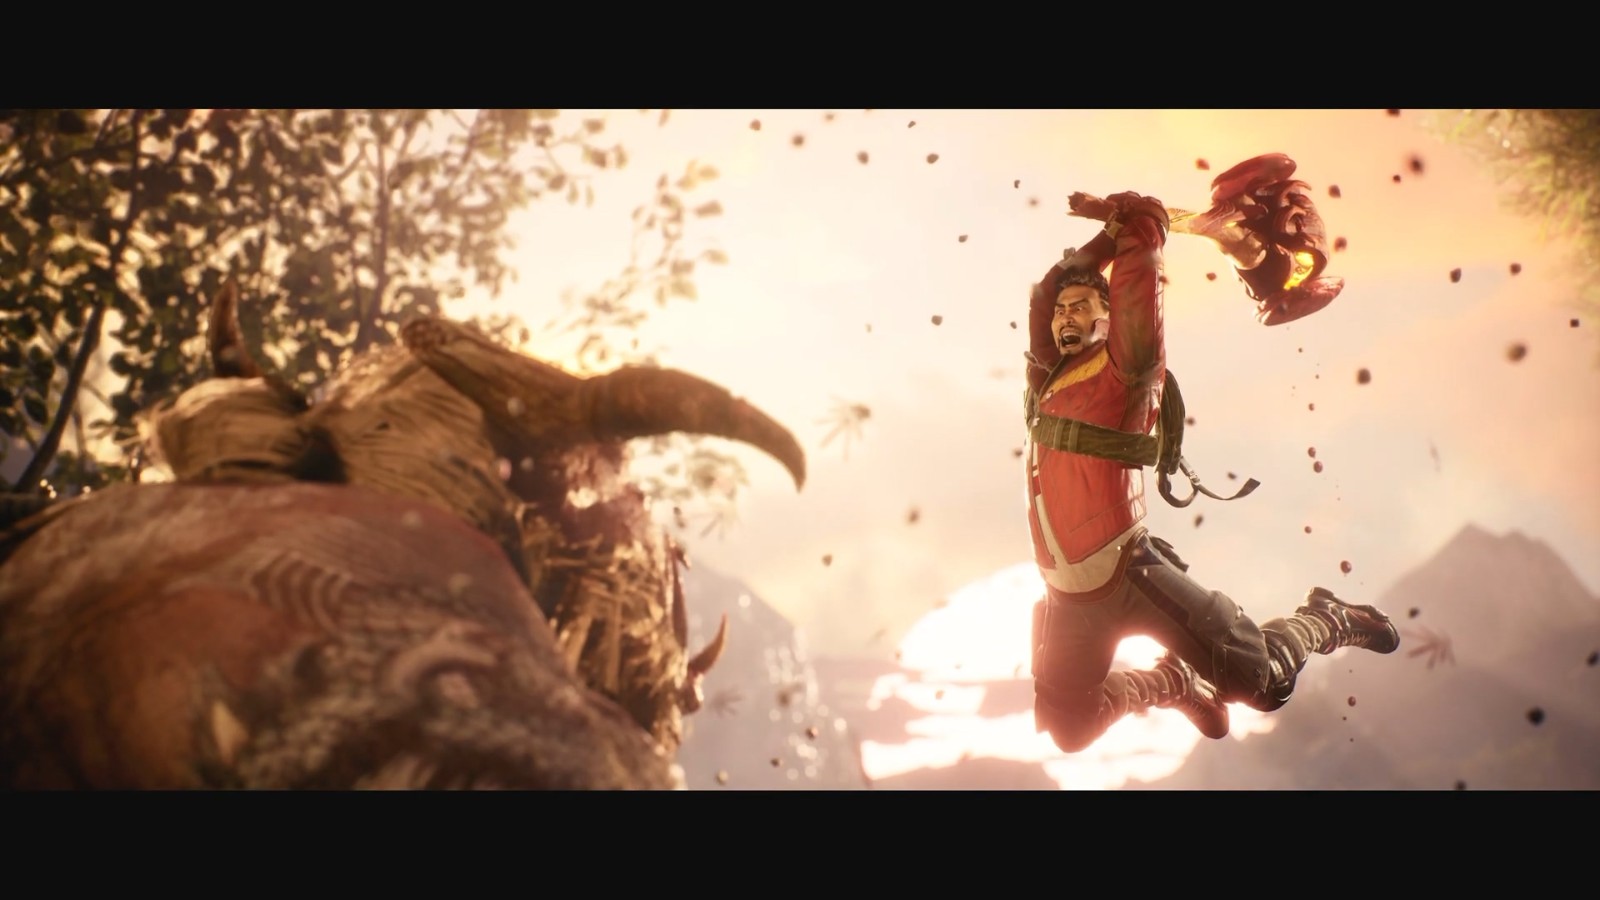 射击游戏《影子战士3》延期至2022年发售 为呈现更棒的游戏